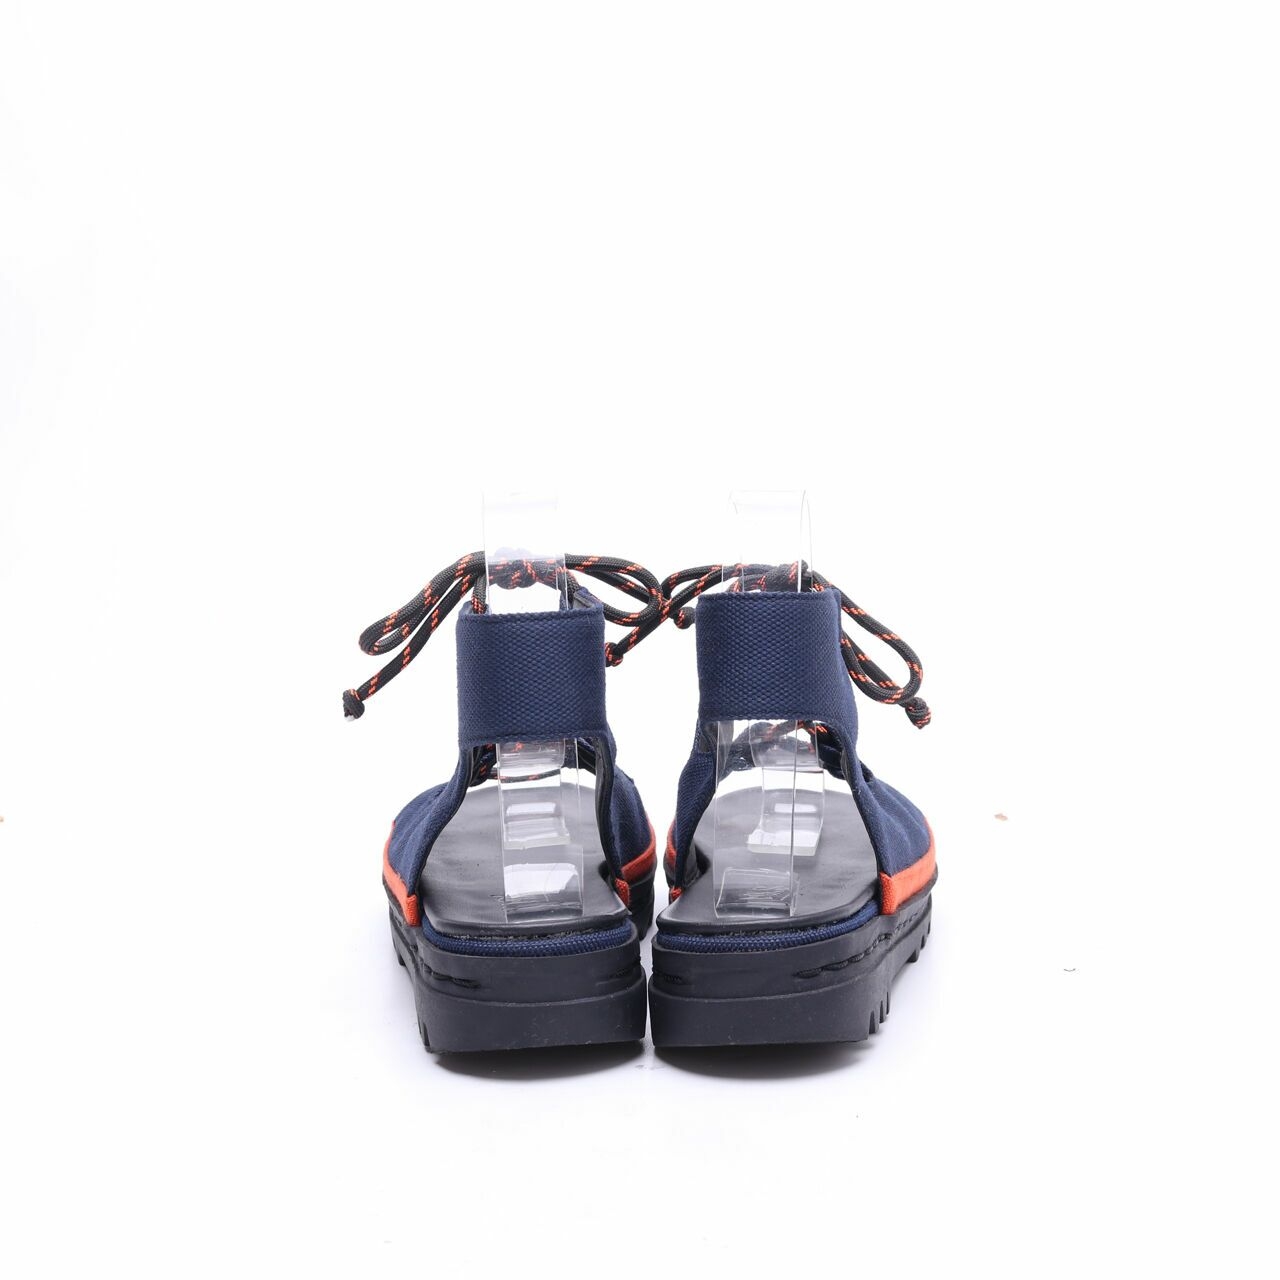 MKS' Navy & Orange Ghillie Sandals